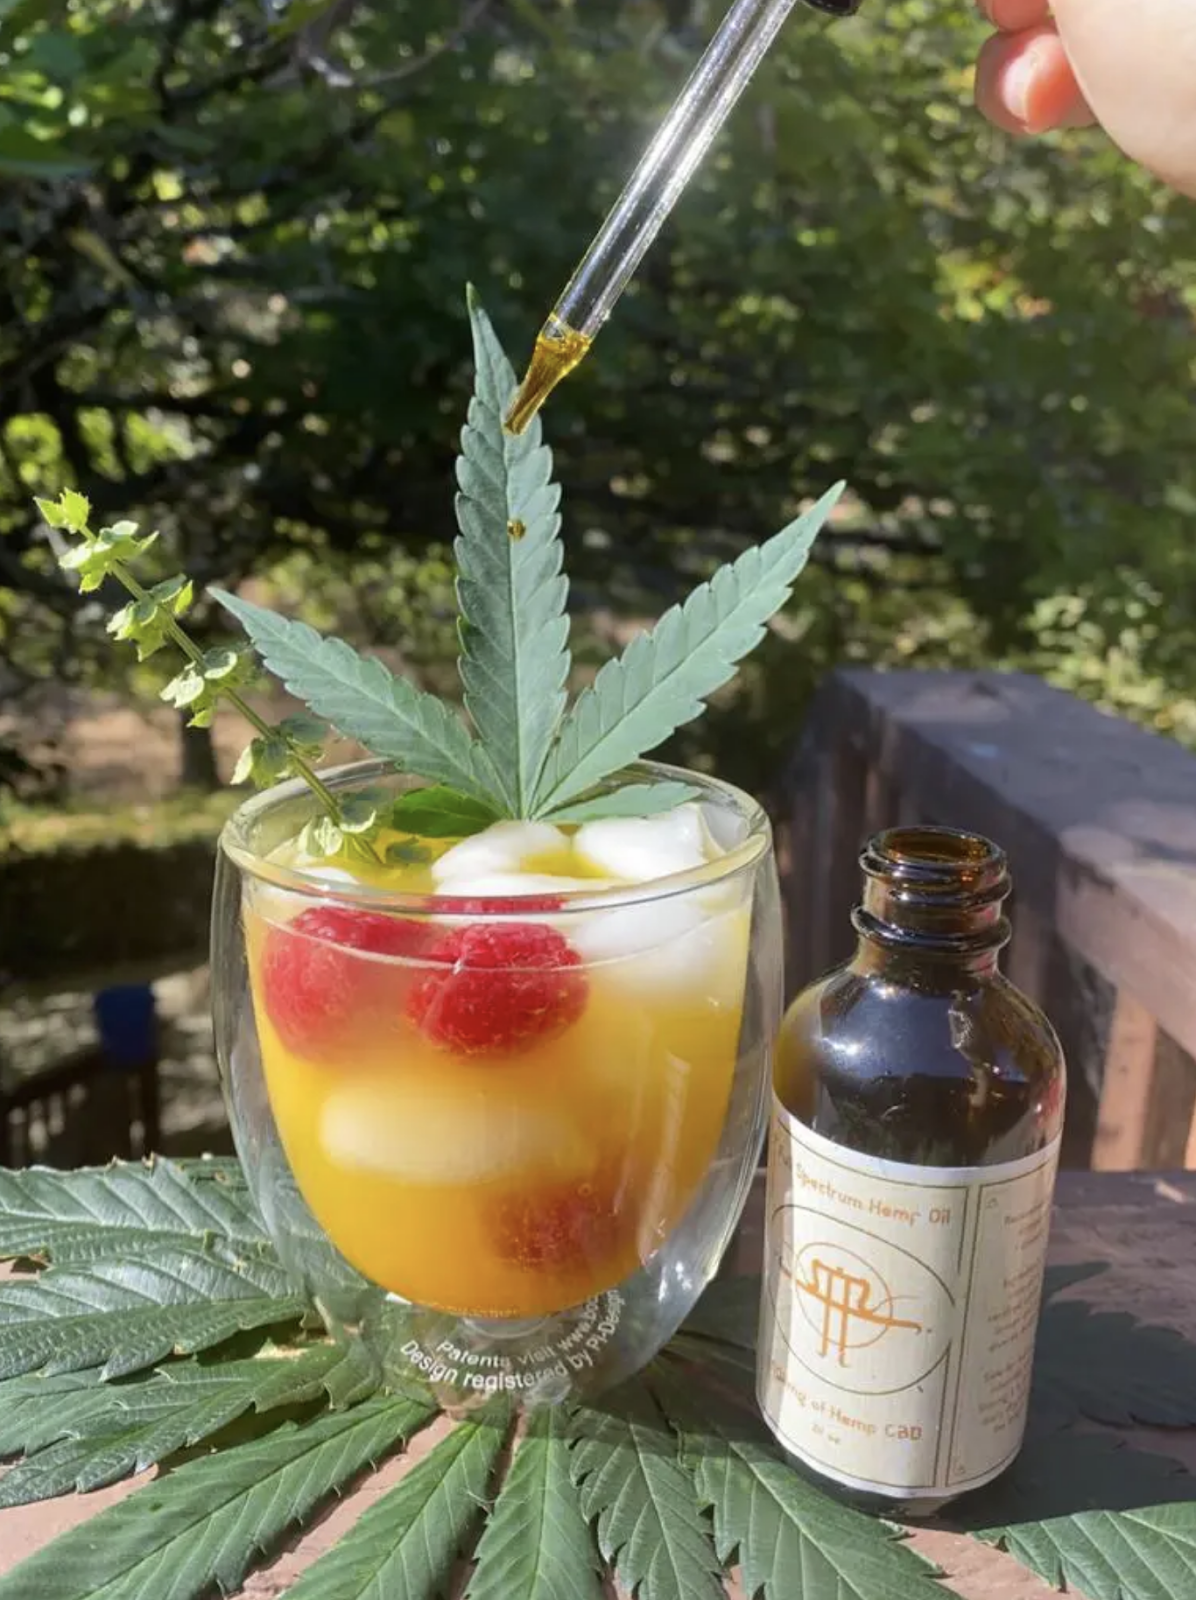 Foto colorida com um frasco e pipeta contendo Óleo de CBD, sendo colocado em um copo de suco de laranja com framboesas e folha de cannabis